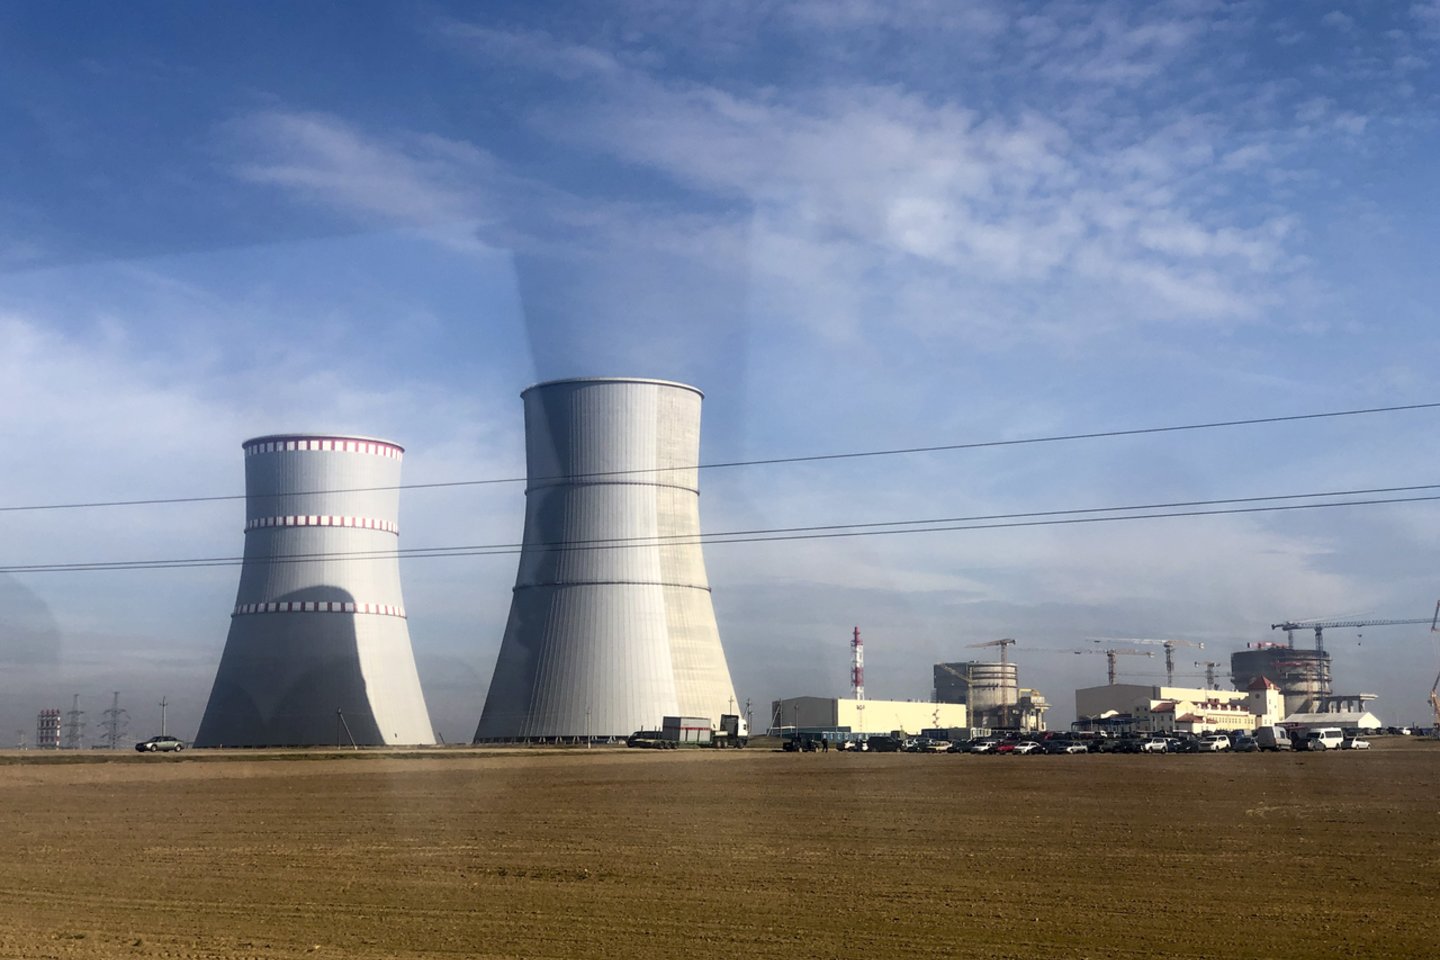 Branduolinis kuras pirmajam jėgainės reaktoriui iš Rusijos buvo atgabentas gegužės pradžioje.<br>V.Ščiavinsko nuotr.